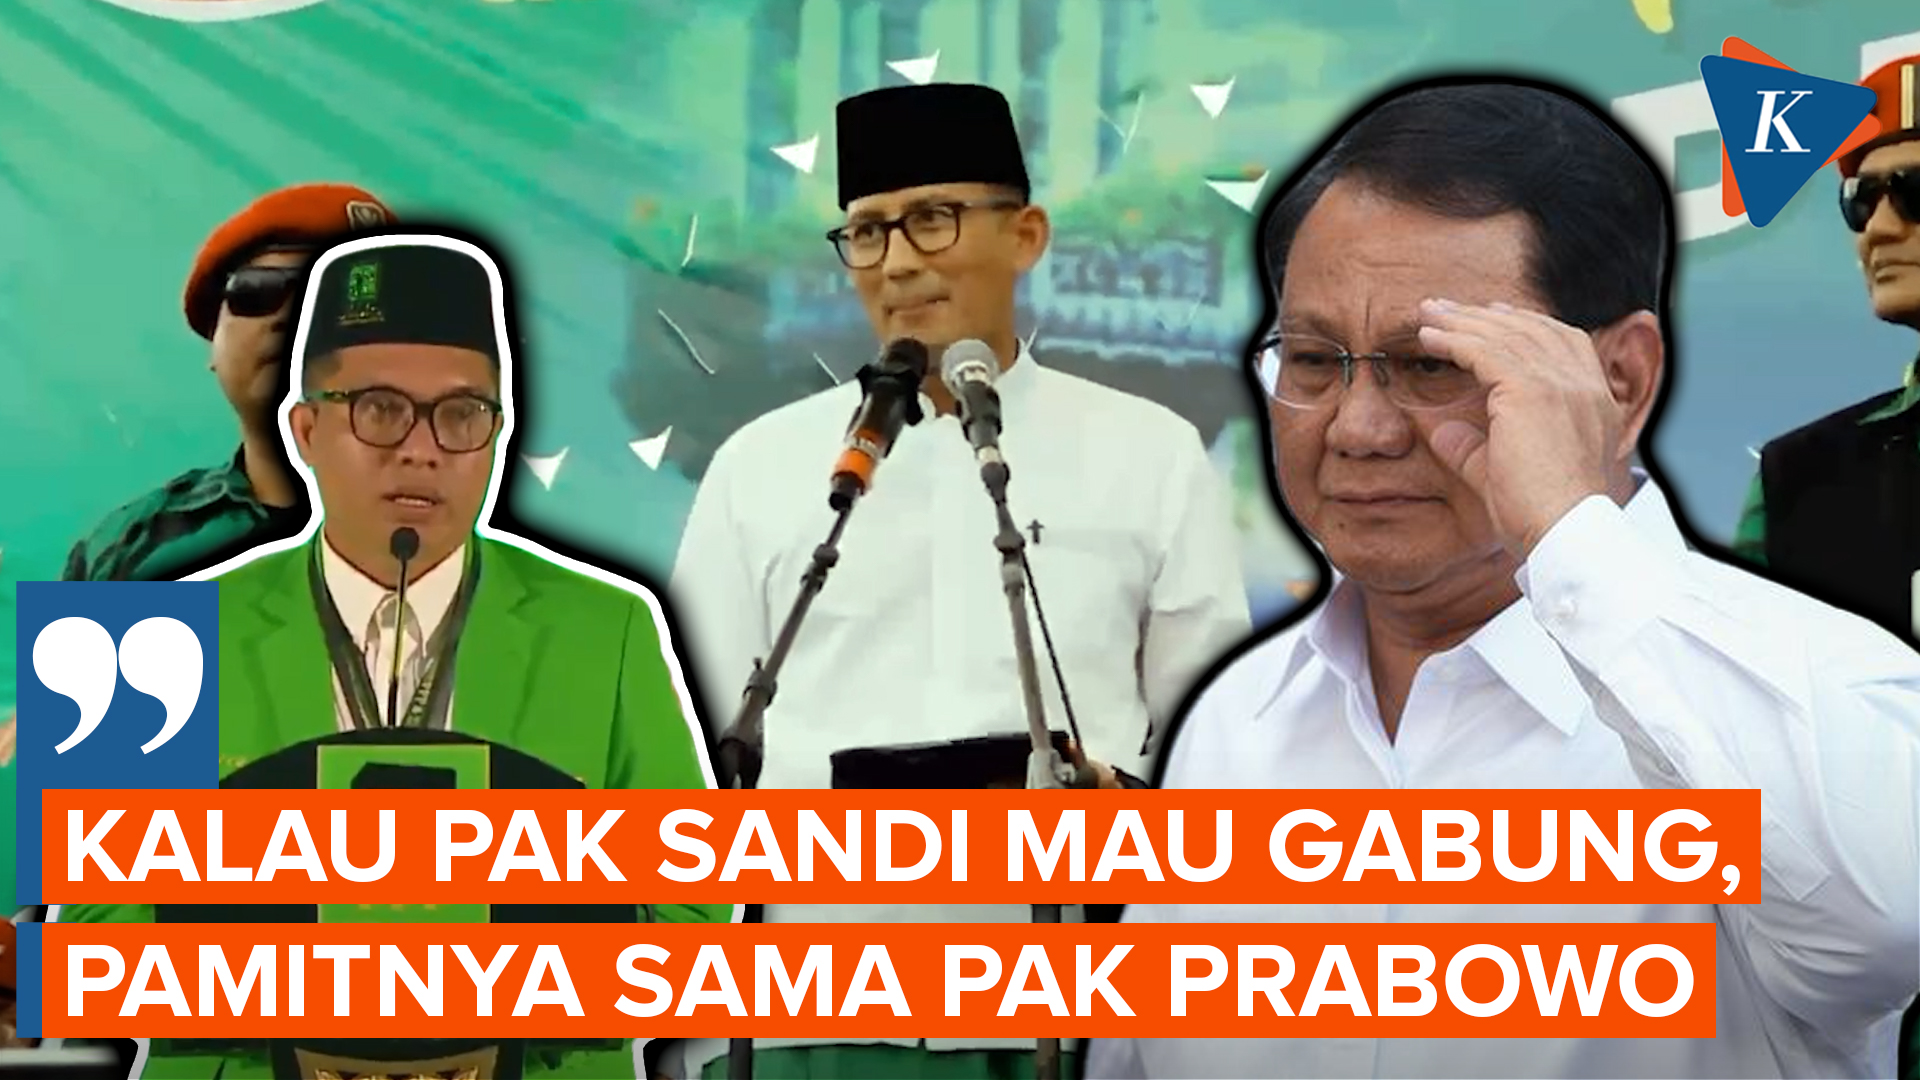 PPP Minta Sandiaga Uno Pamit ke Prabowo jika Ingin Gabung